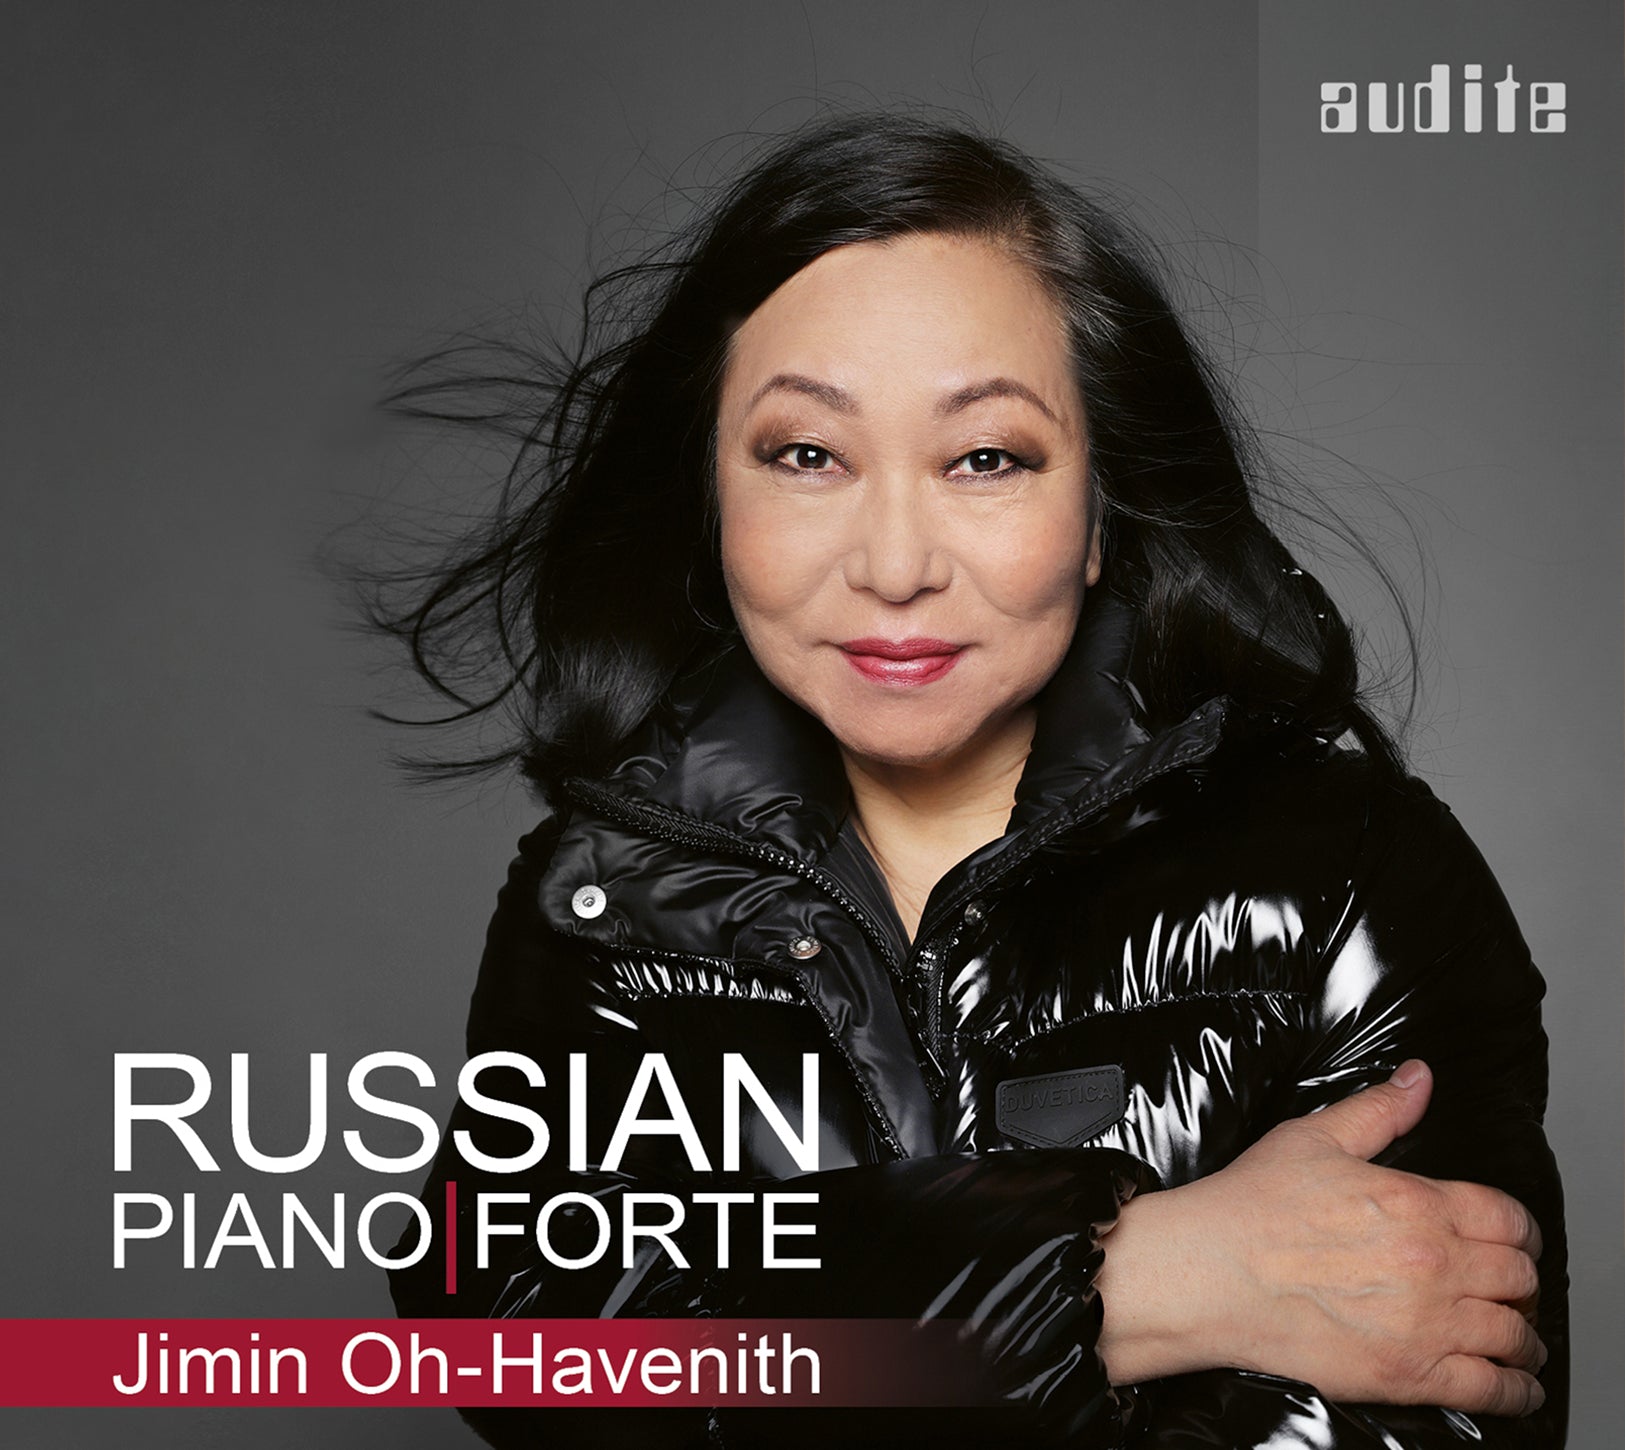 Russian Piano Forte / Jimin Oh-Havenith